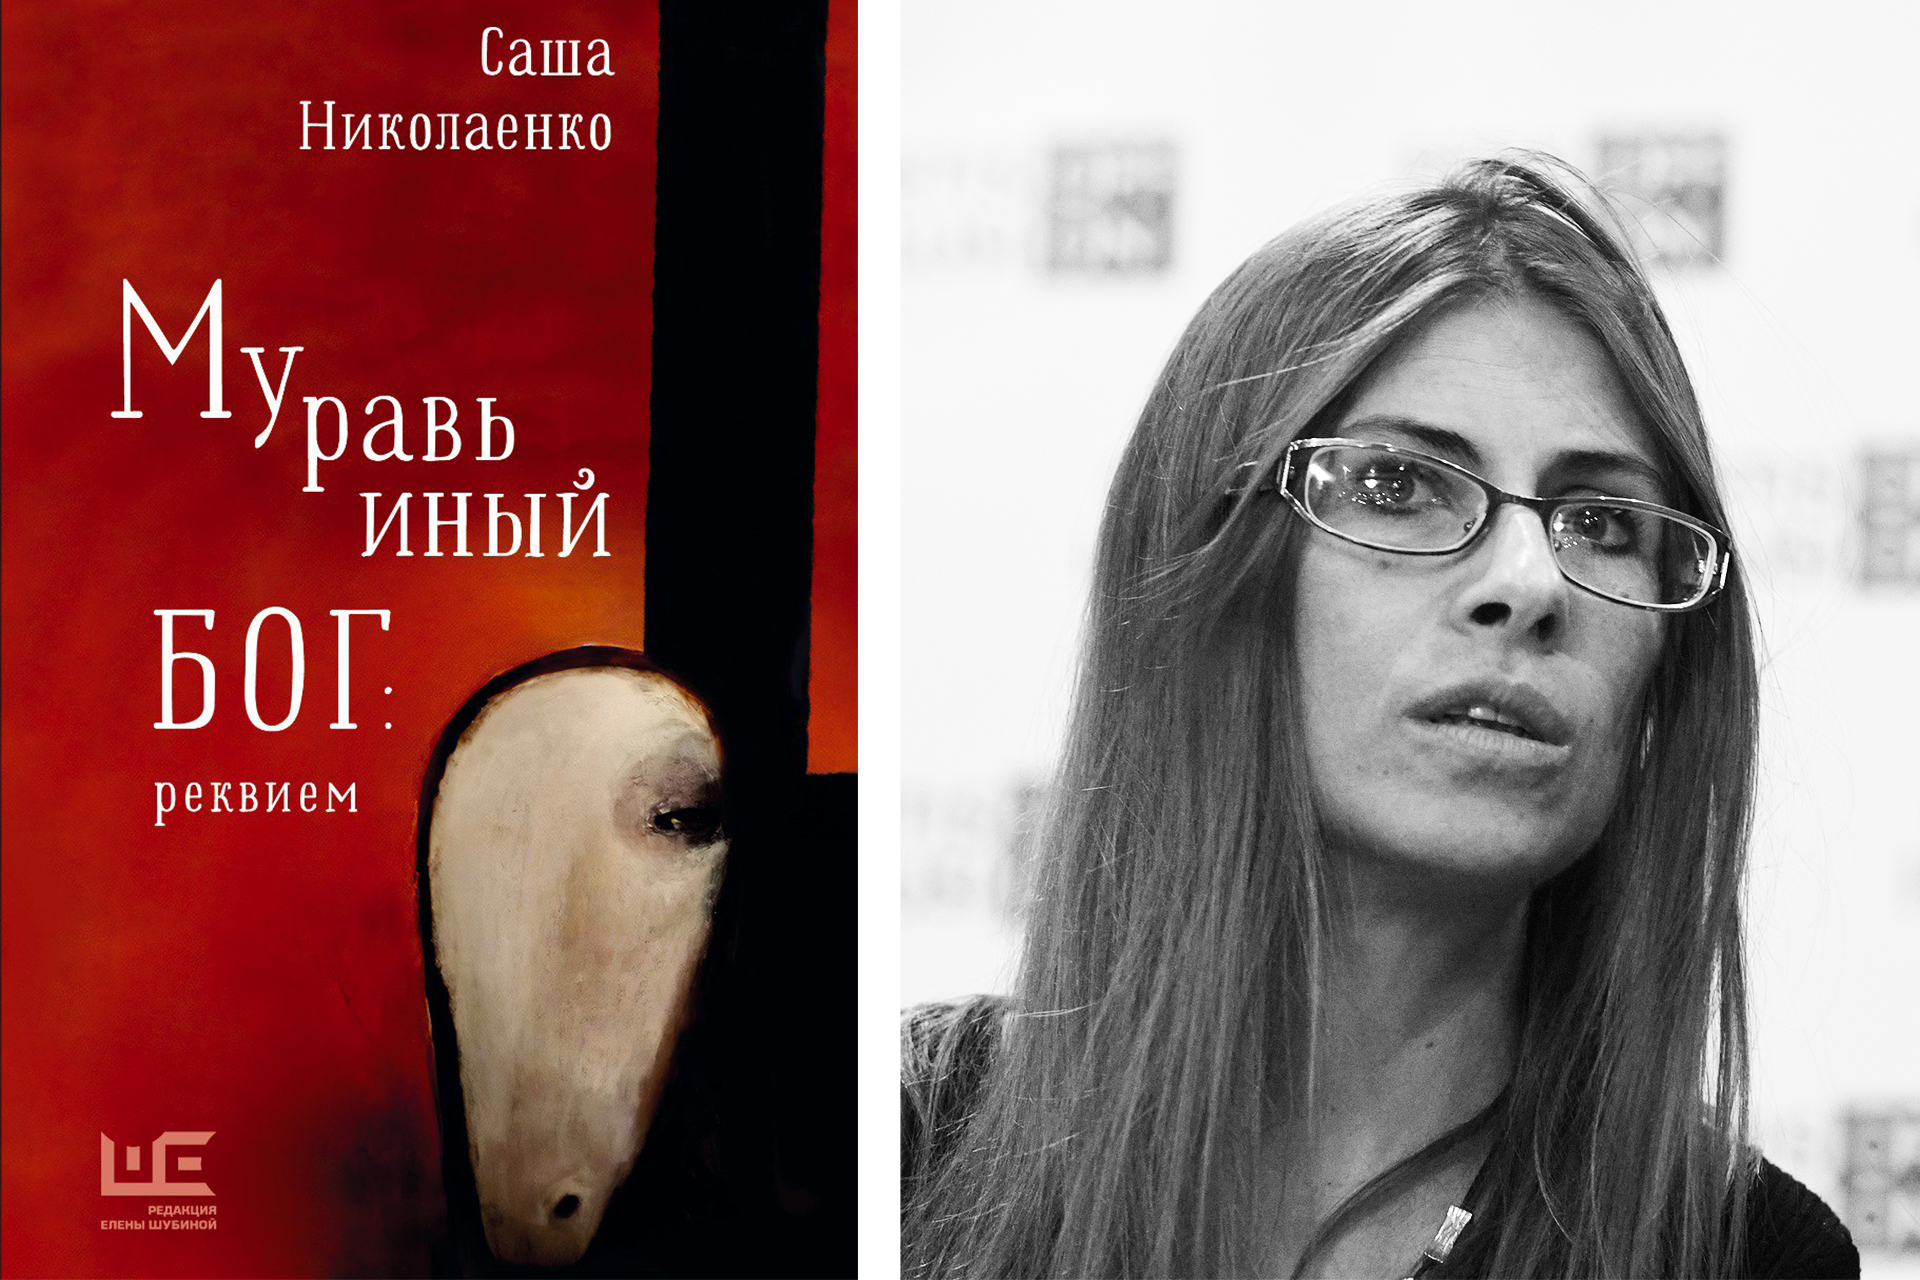 Слева: обложка книги; справа: Саша Николаенко